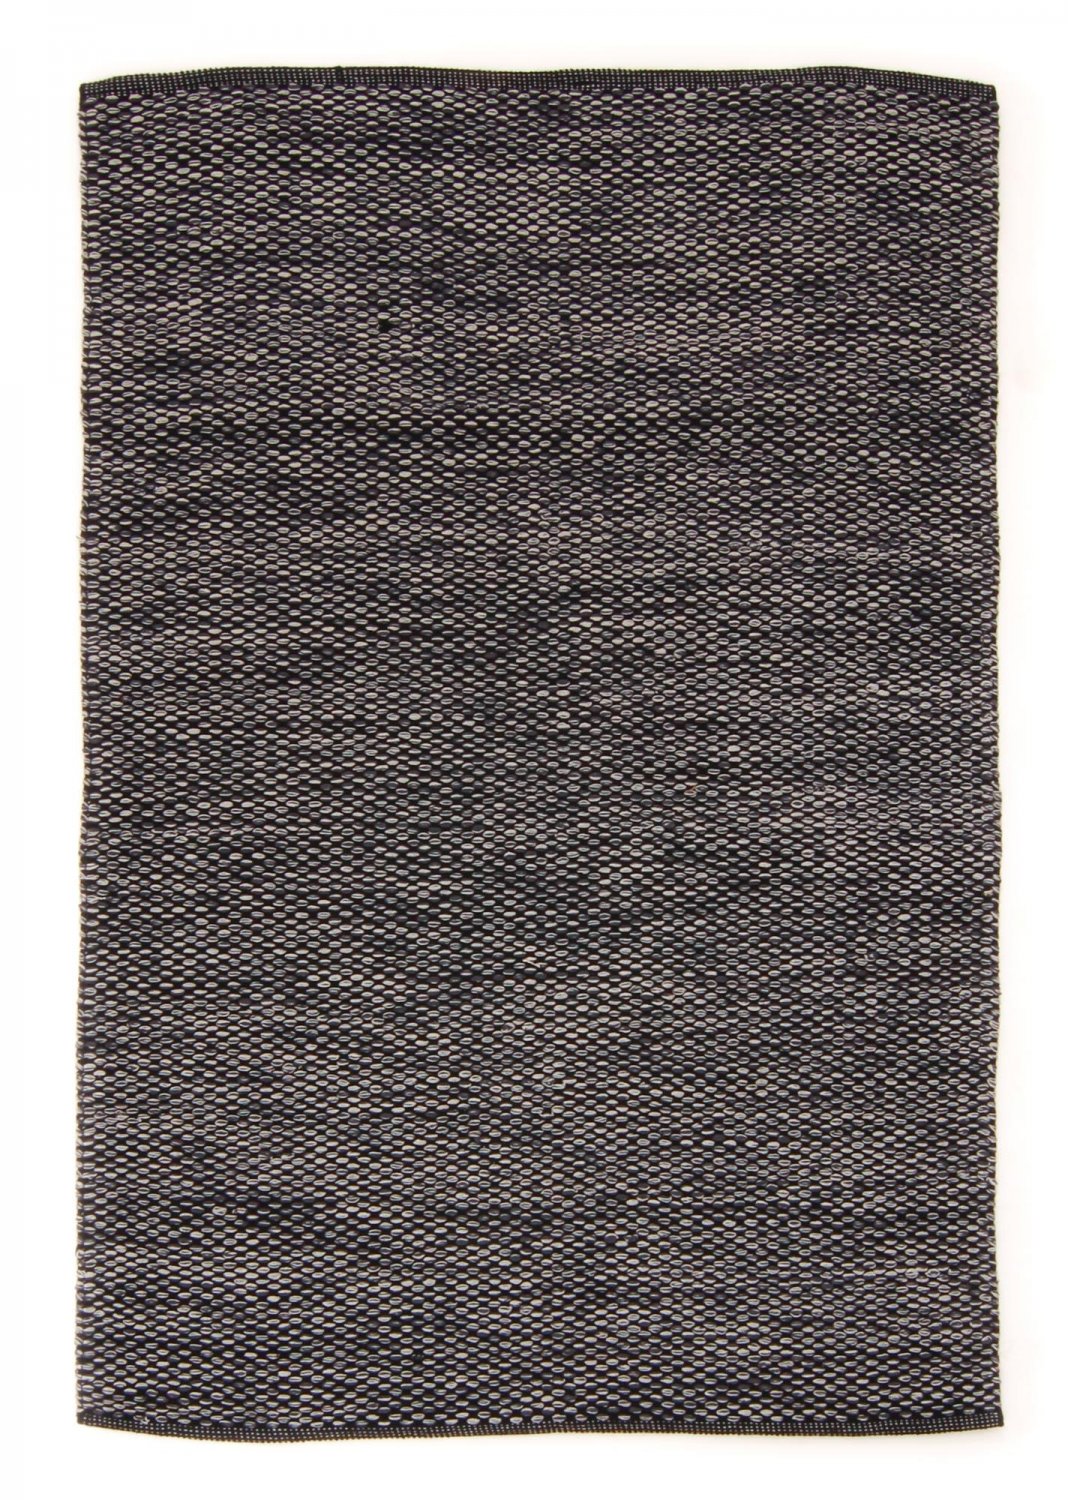 Flickenteppich - Tuva (schwarz/grau))